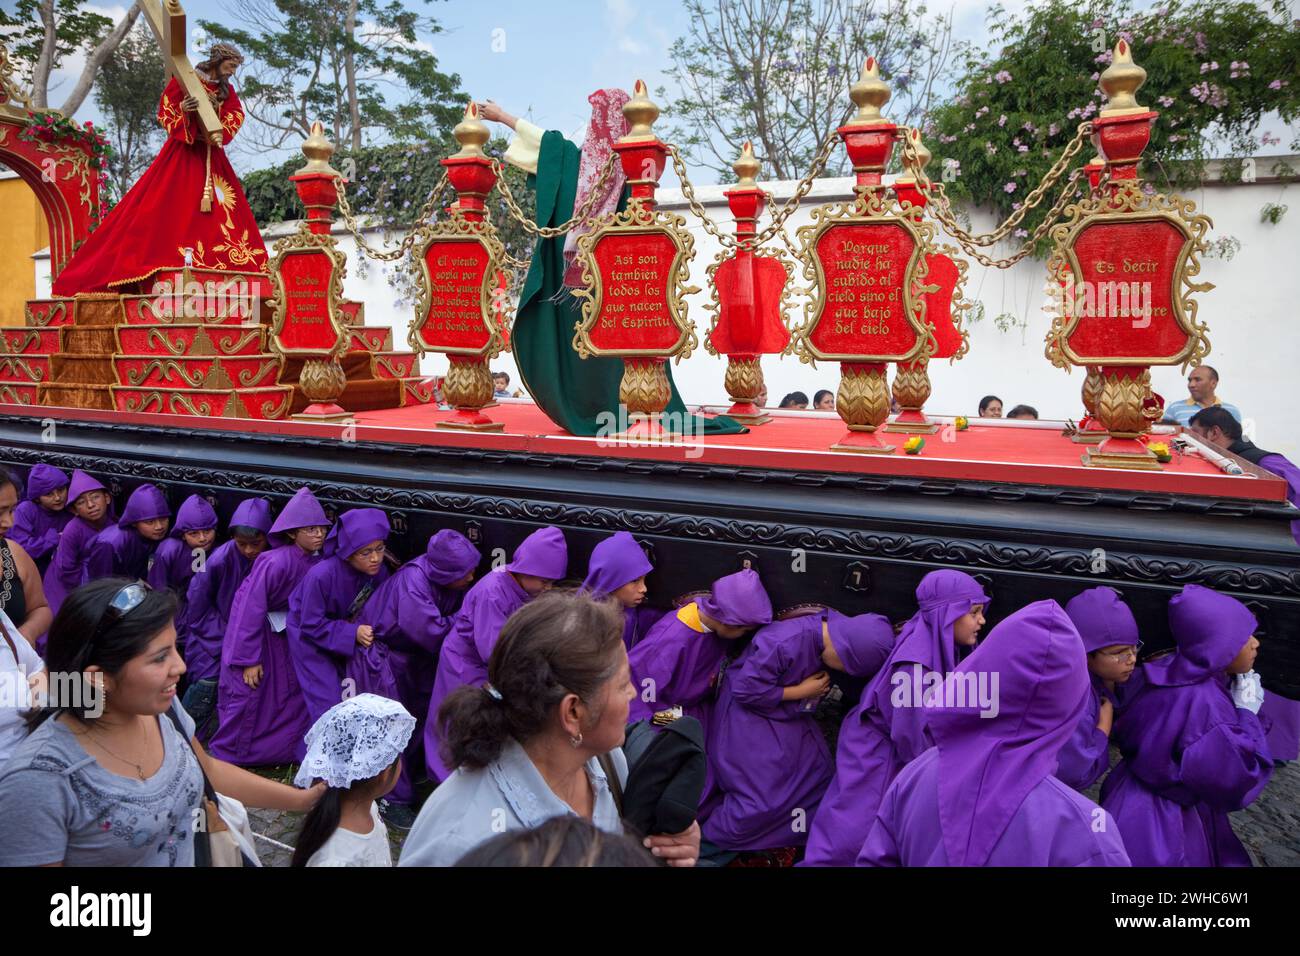 Antigua, Guatemala. Ragazzi adolescenti che portano un galleggiante (Anda) in una Processione religiosa durante la settimana Santa, la Semana Santa. Foto Stock